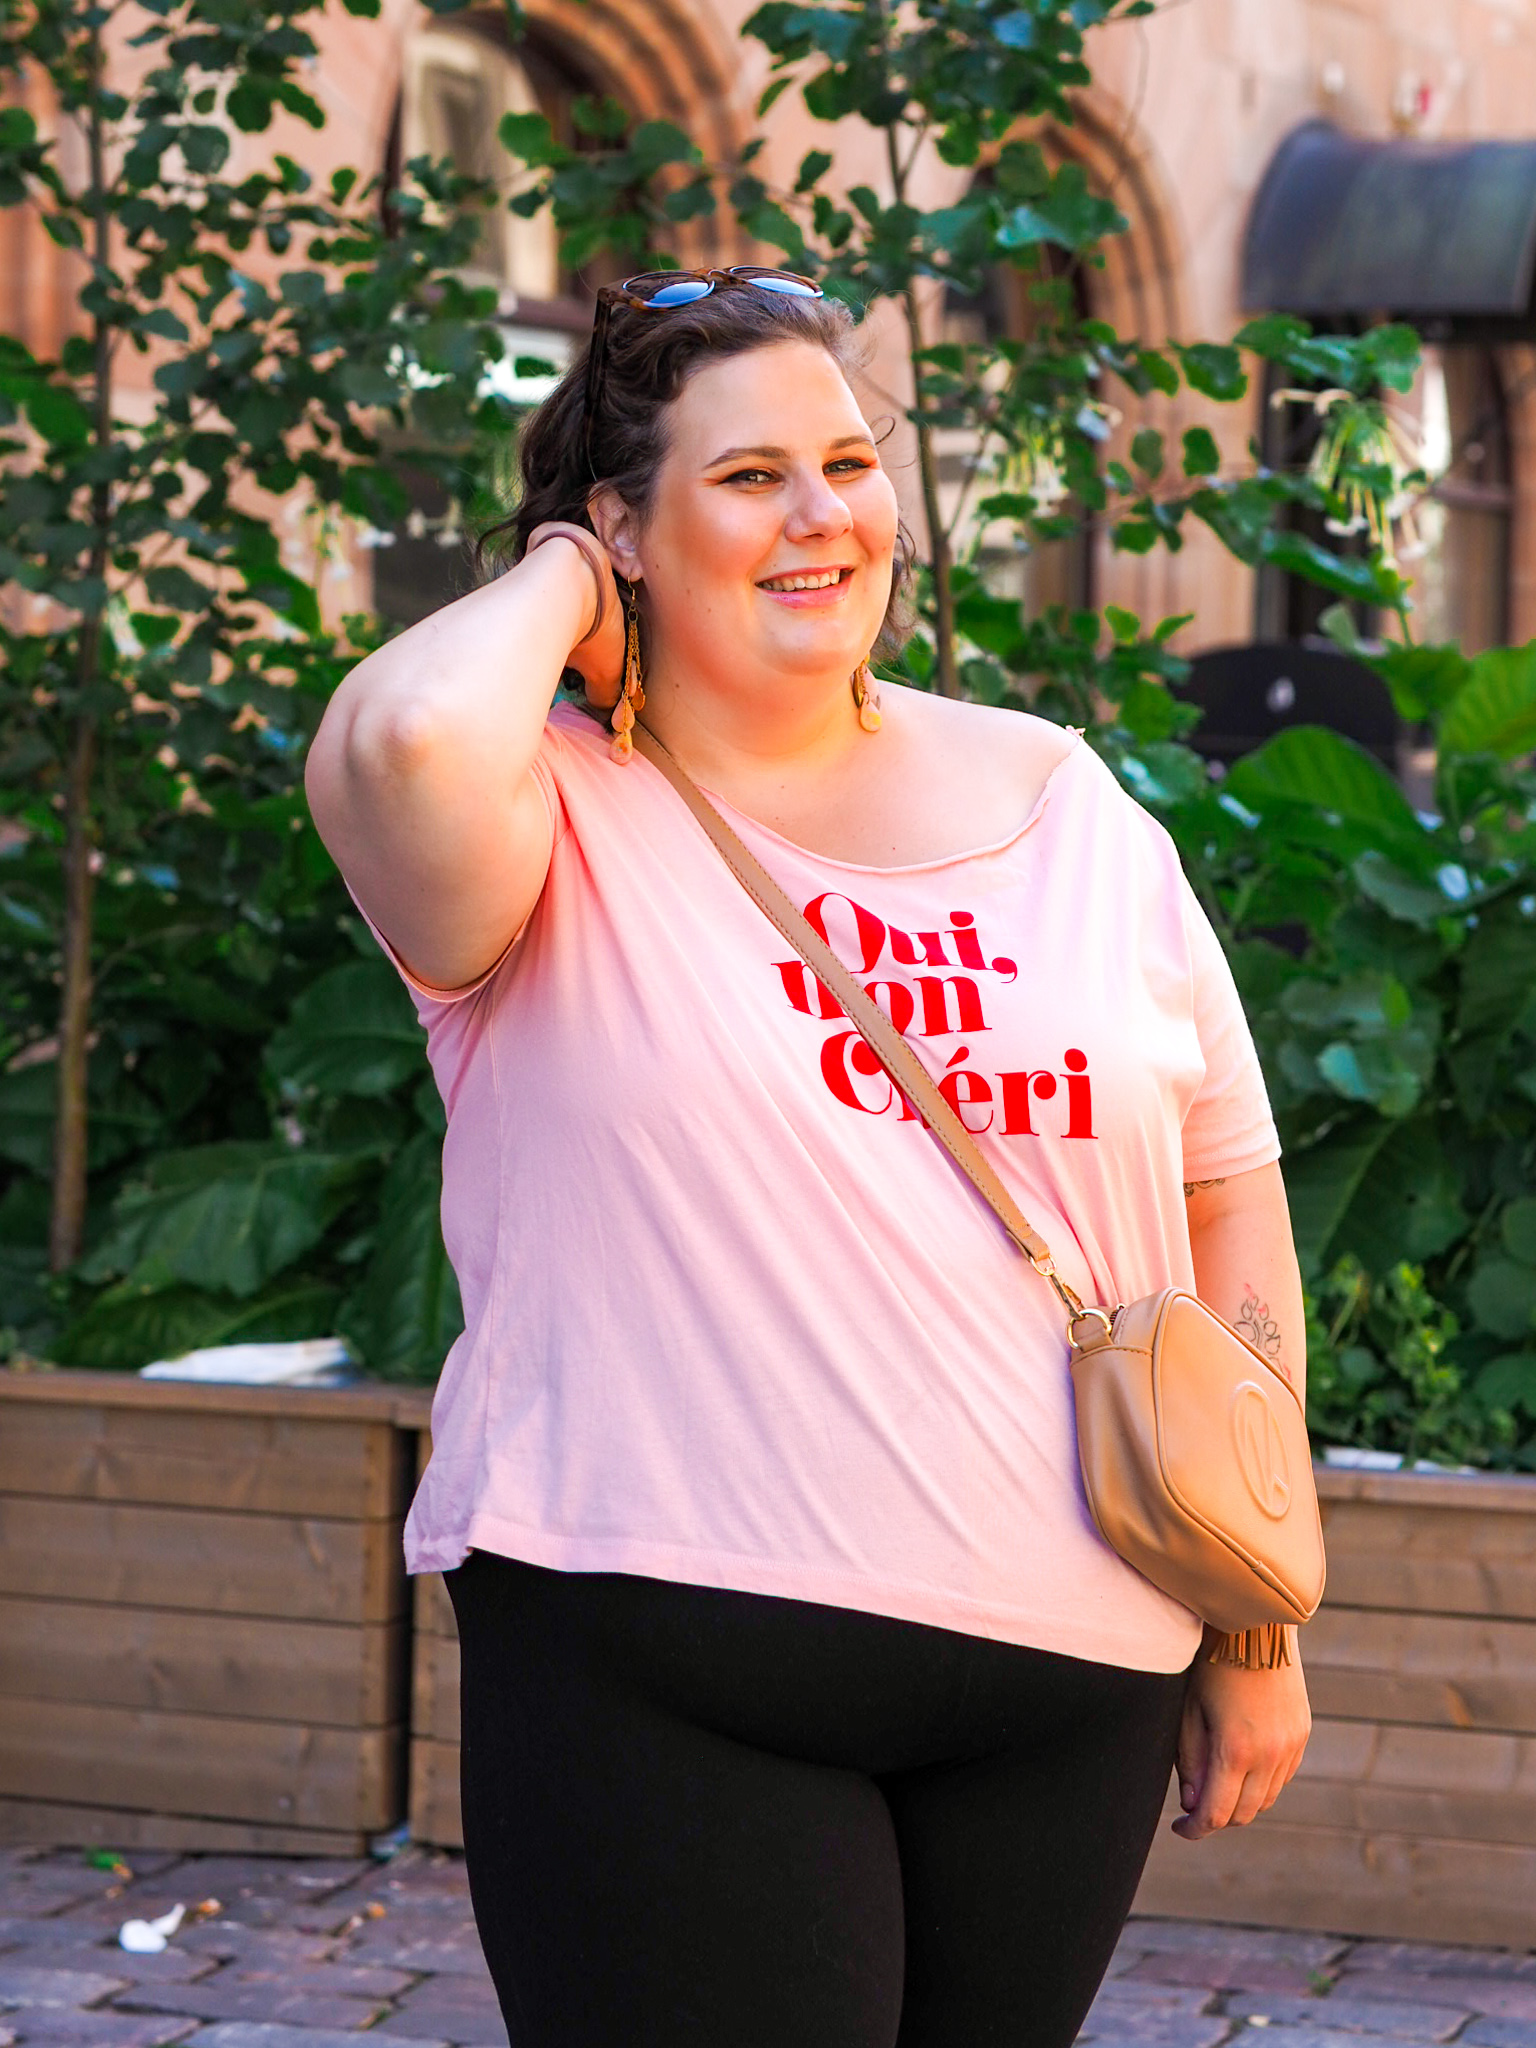 Oui mon cheri - vaaleanpunainen t-paita - BMH - Big mamas home by Jenni